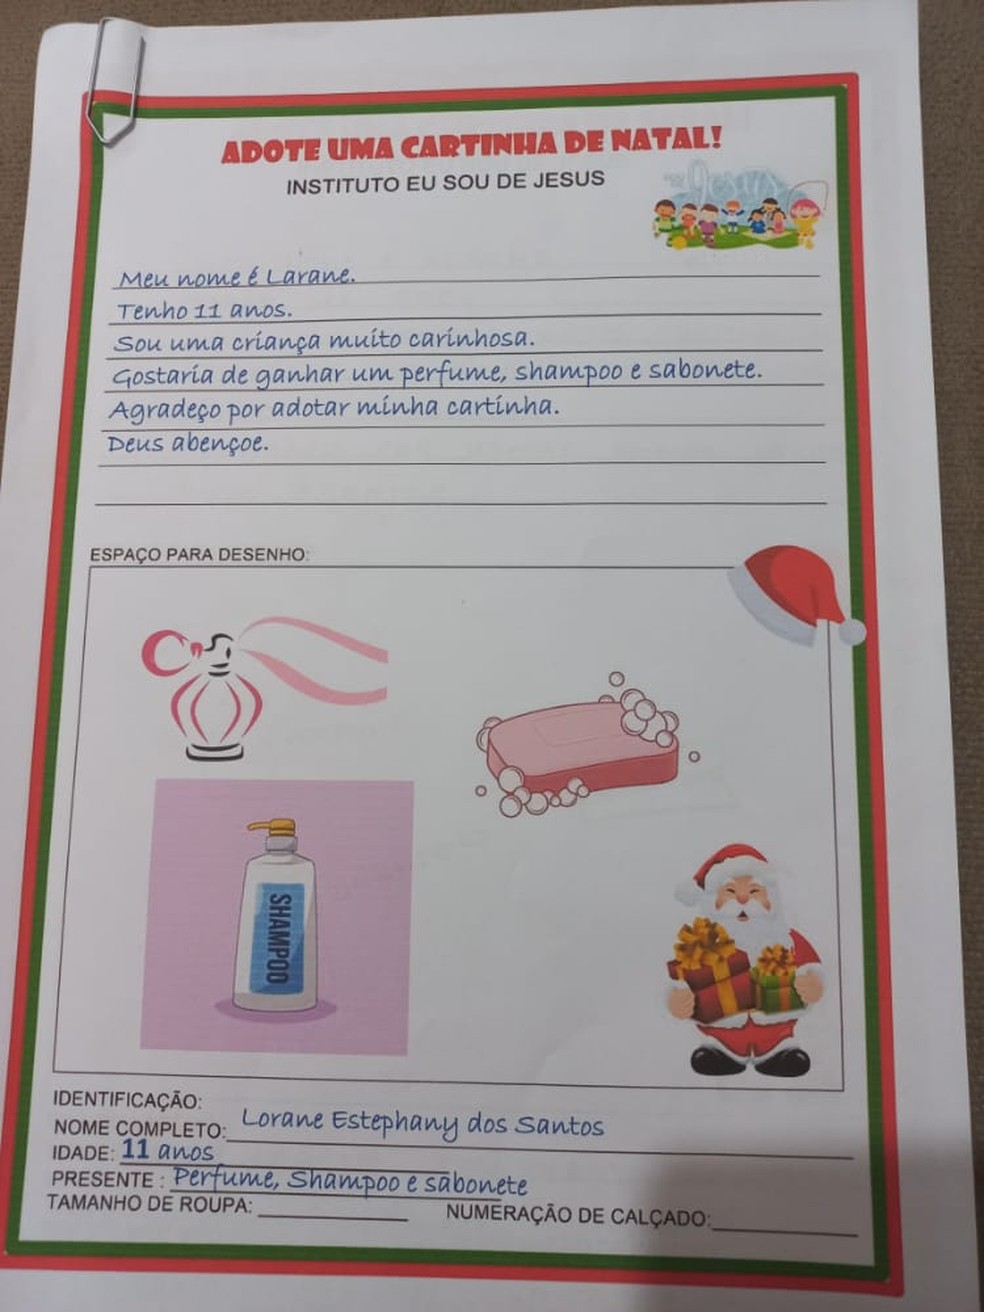 Crianças pedem shampoo, sabonete e roupas em cartinhas de Natal na PB:  'sonho' | Paraíba | G1